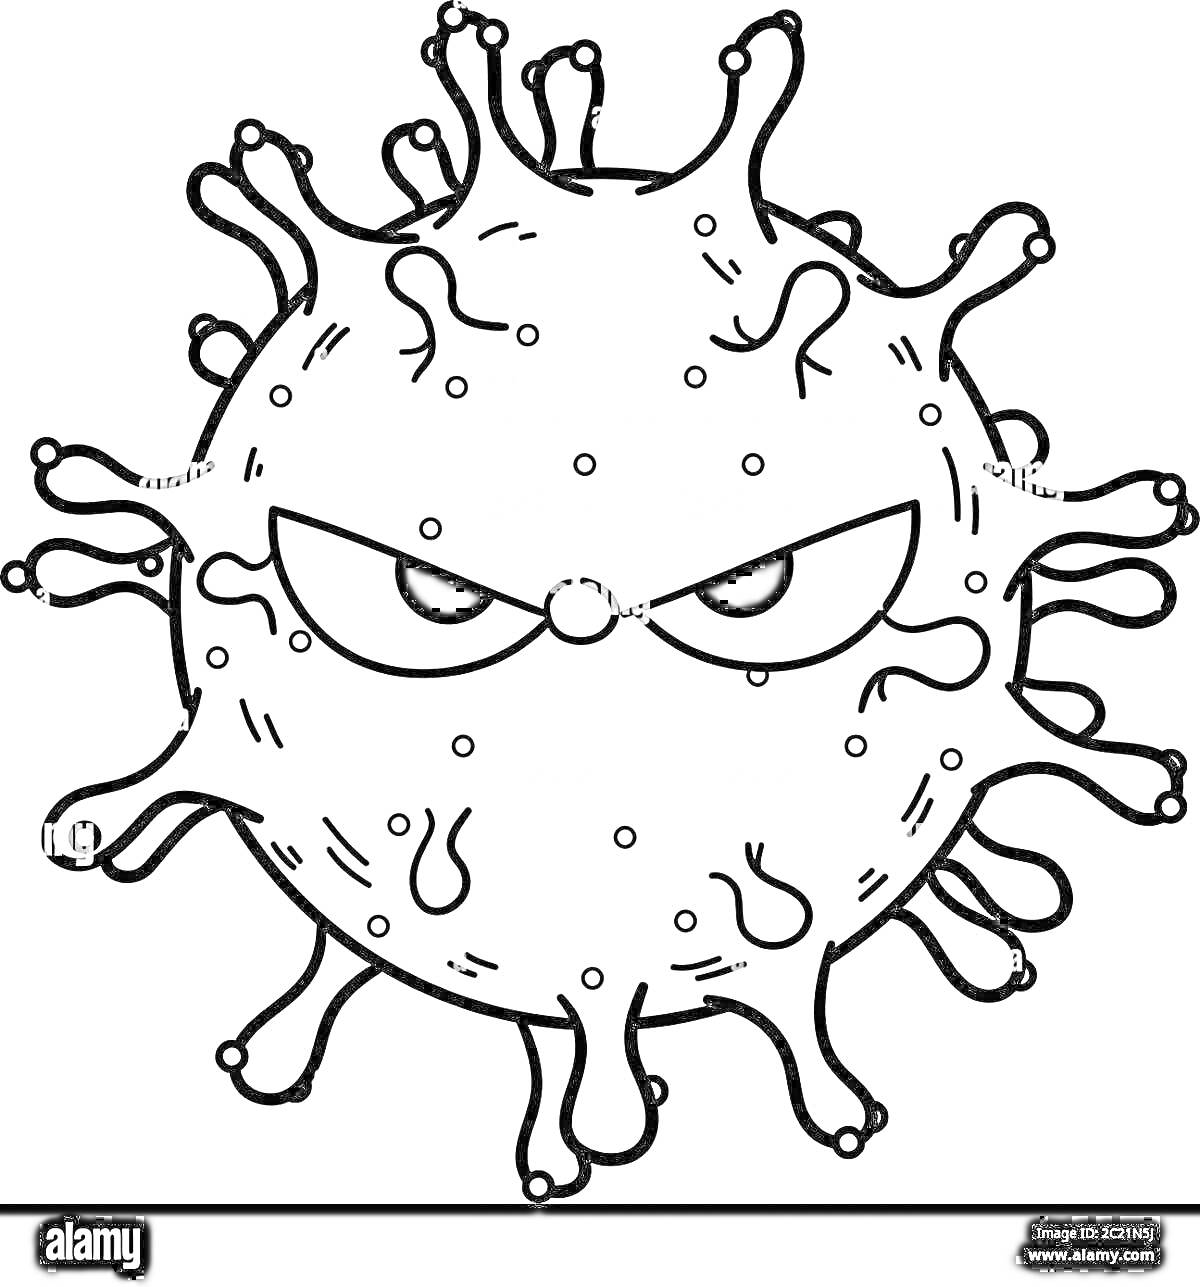 Микроб с сердитыми глазами и щупальцами